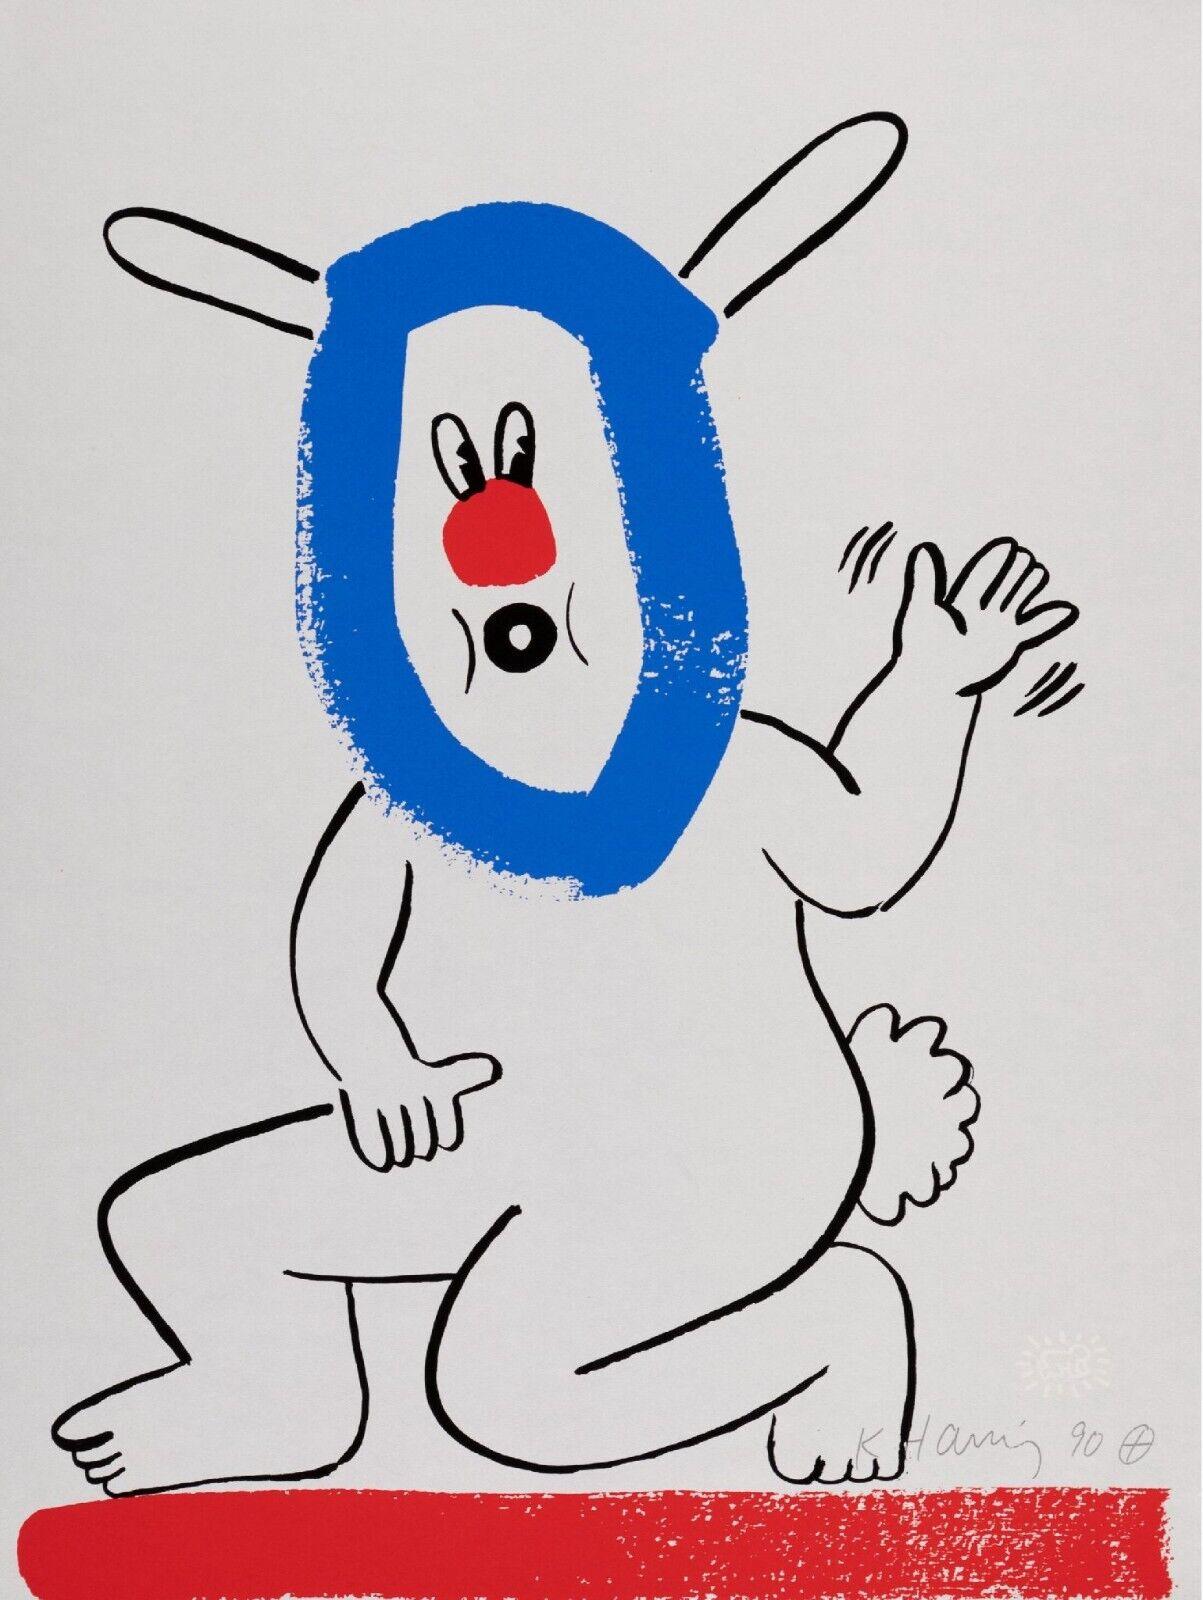 Artiste : Keith Haring
Titre : Sans titre  (L'histoire du rouge et du bleu)
Édition : Numérotée De l'édition limitée à 90 exemplaires
Support : Sérigraphie originale en couleurs sur papier
Année : 1989-1990
Signature : Signée dans la plaque par